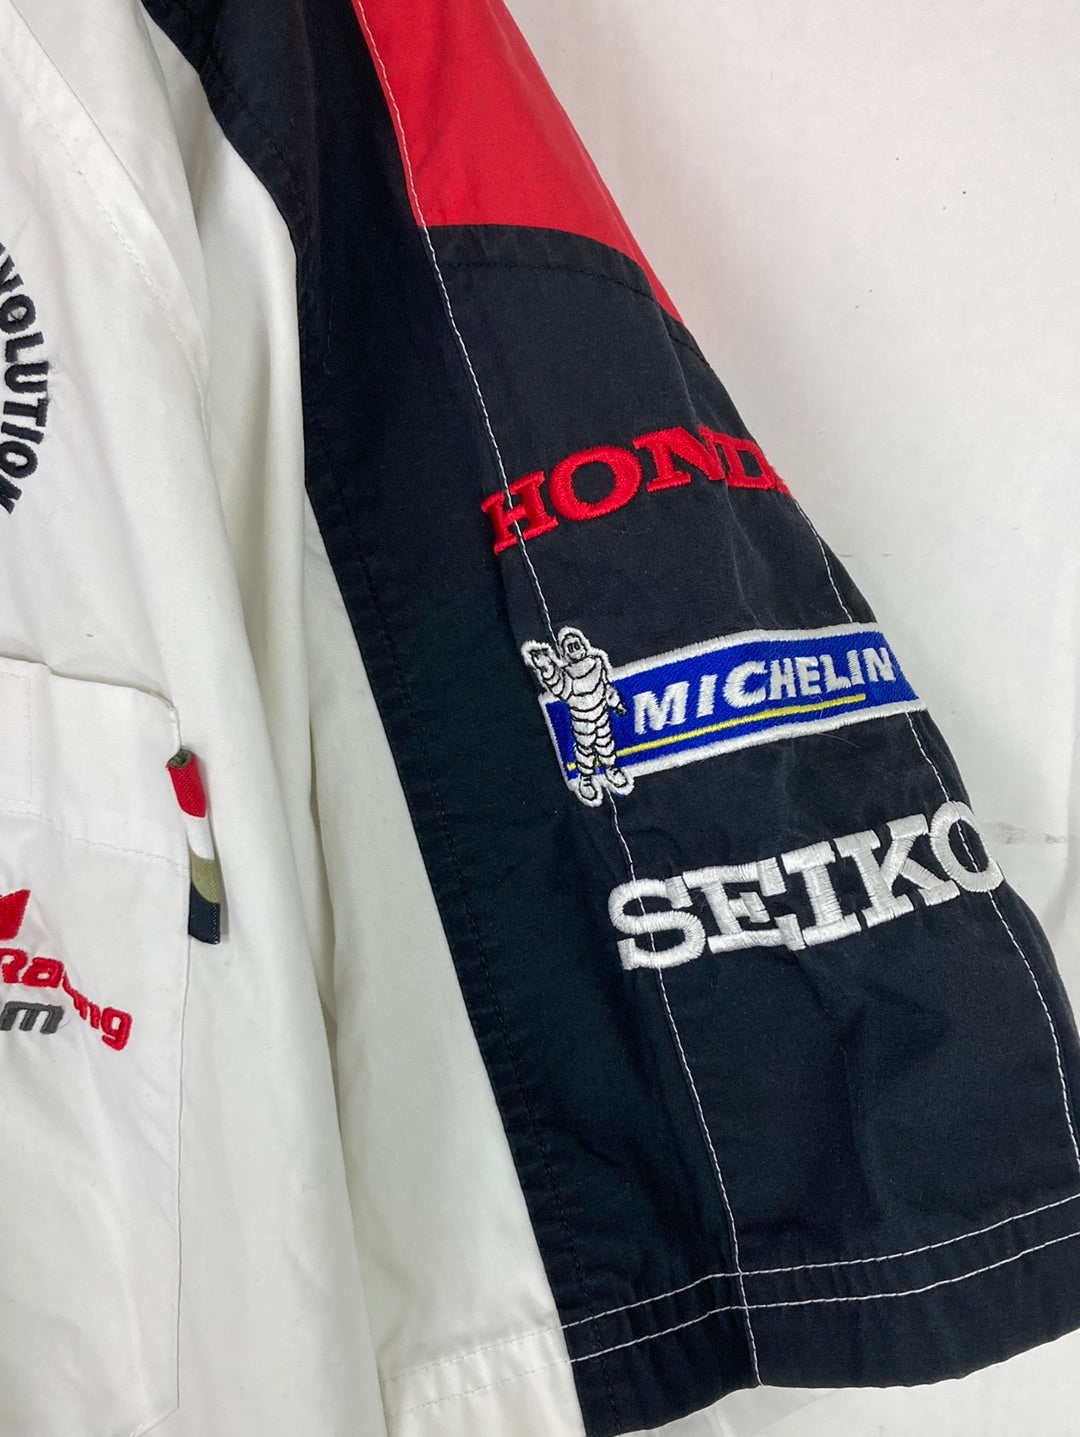 Honda Racing Hemd (L)